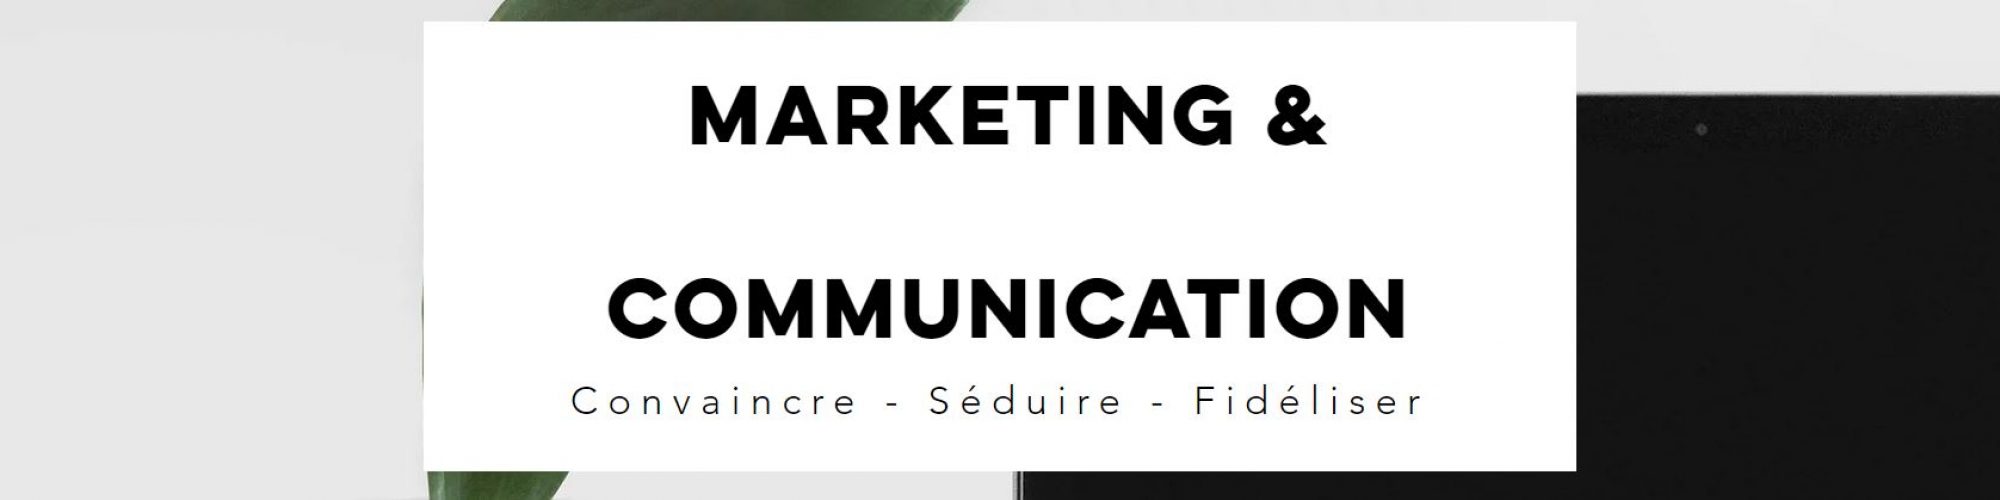 Marketing & Communication cecileboury.com